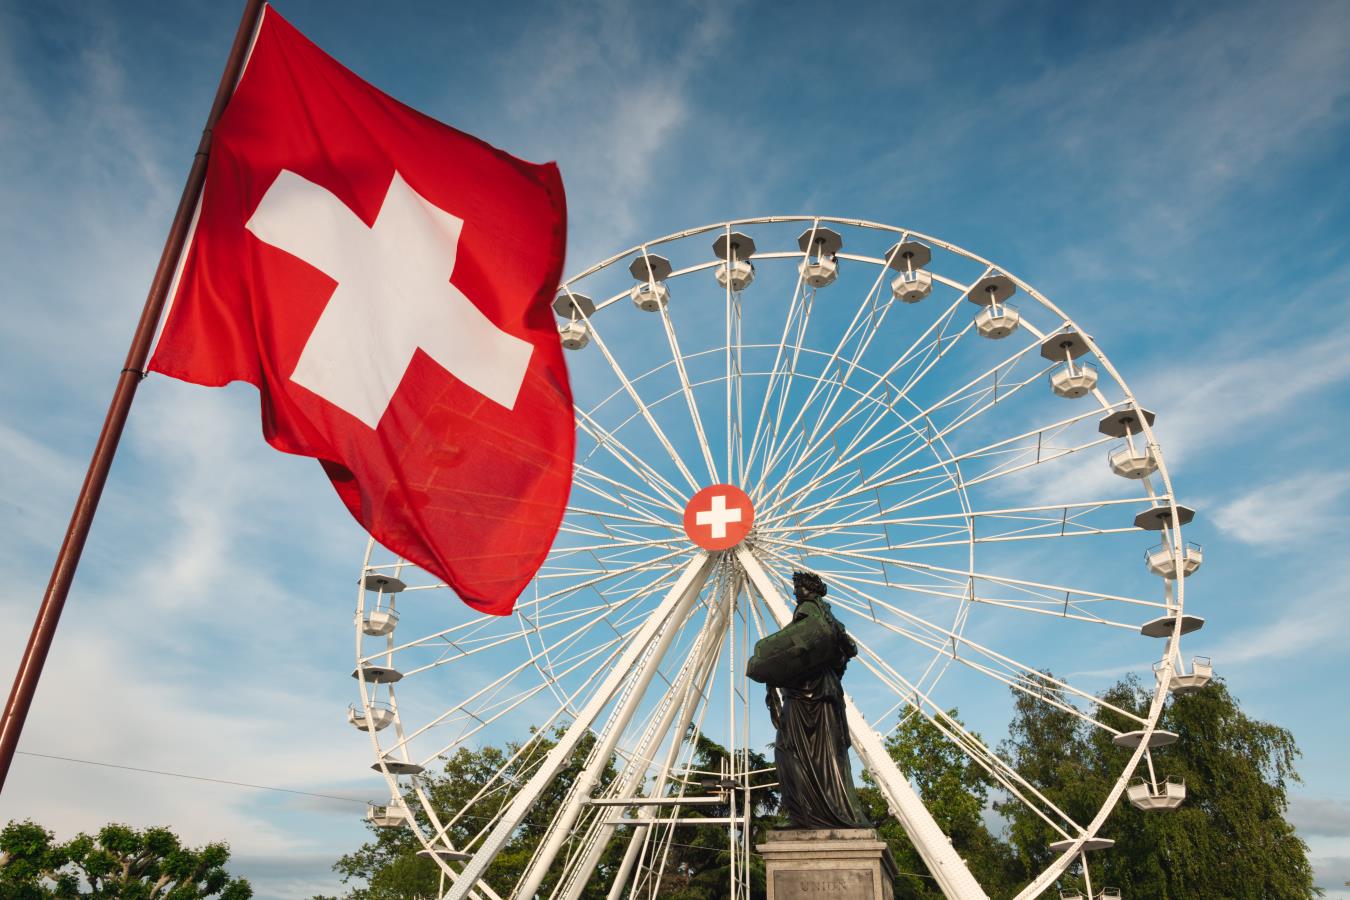 Forex: franco svizzero, la fine della caduta è vicina?